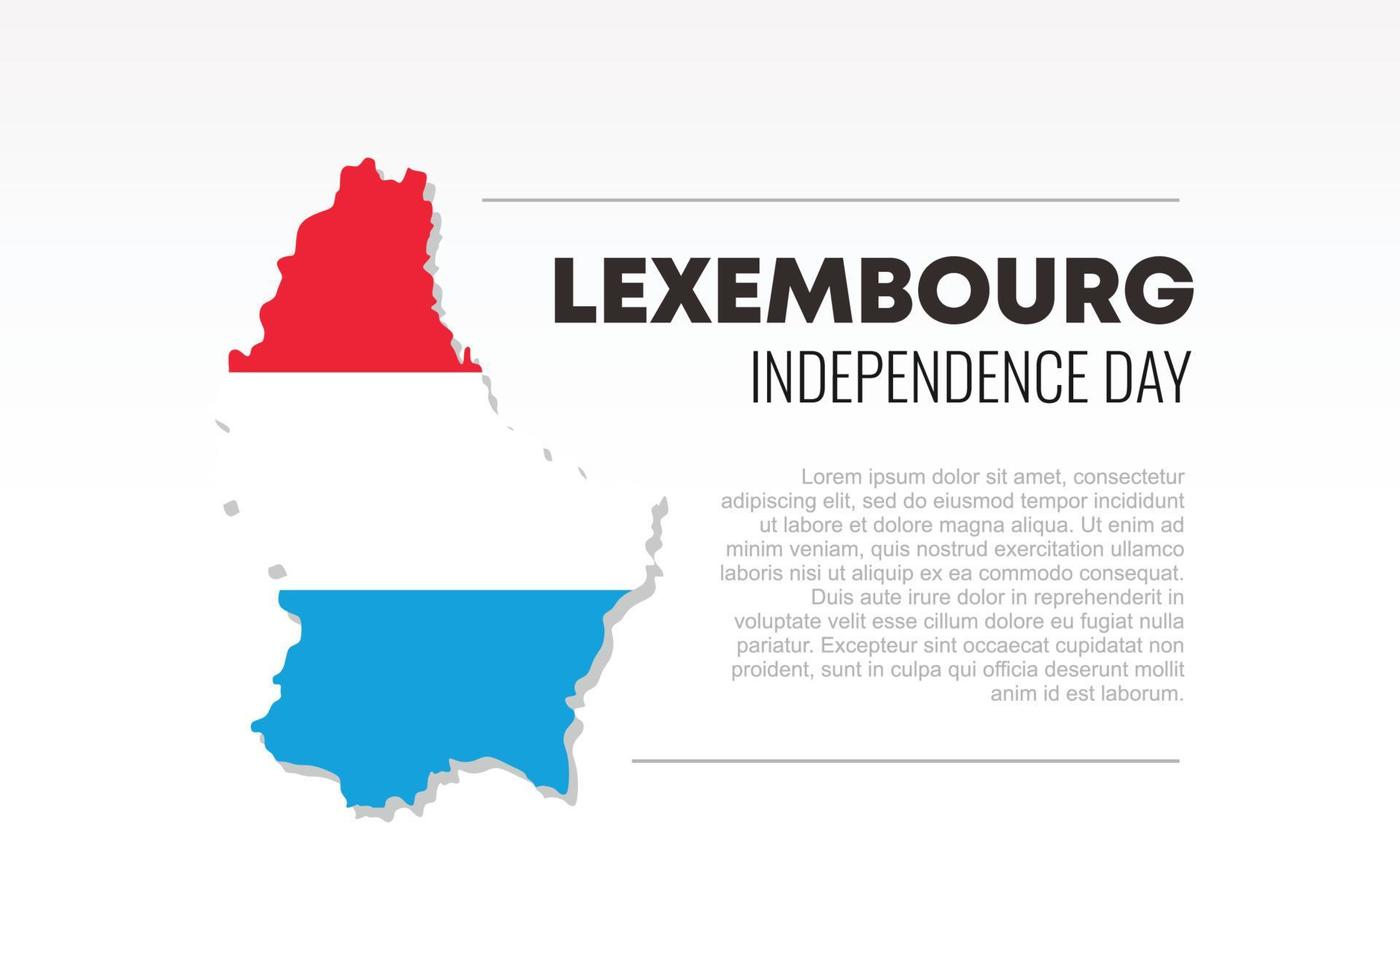 bannière de fond de la fête de l'indépendance du luxembourg avec drapeau pour la célébration nationale sur vecteur